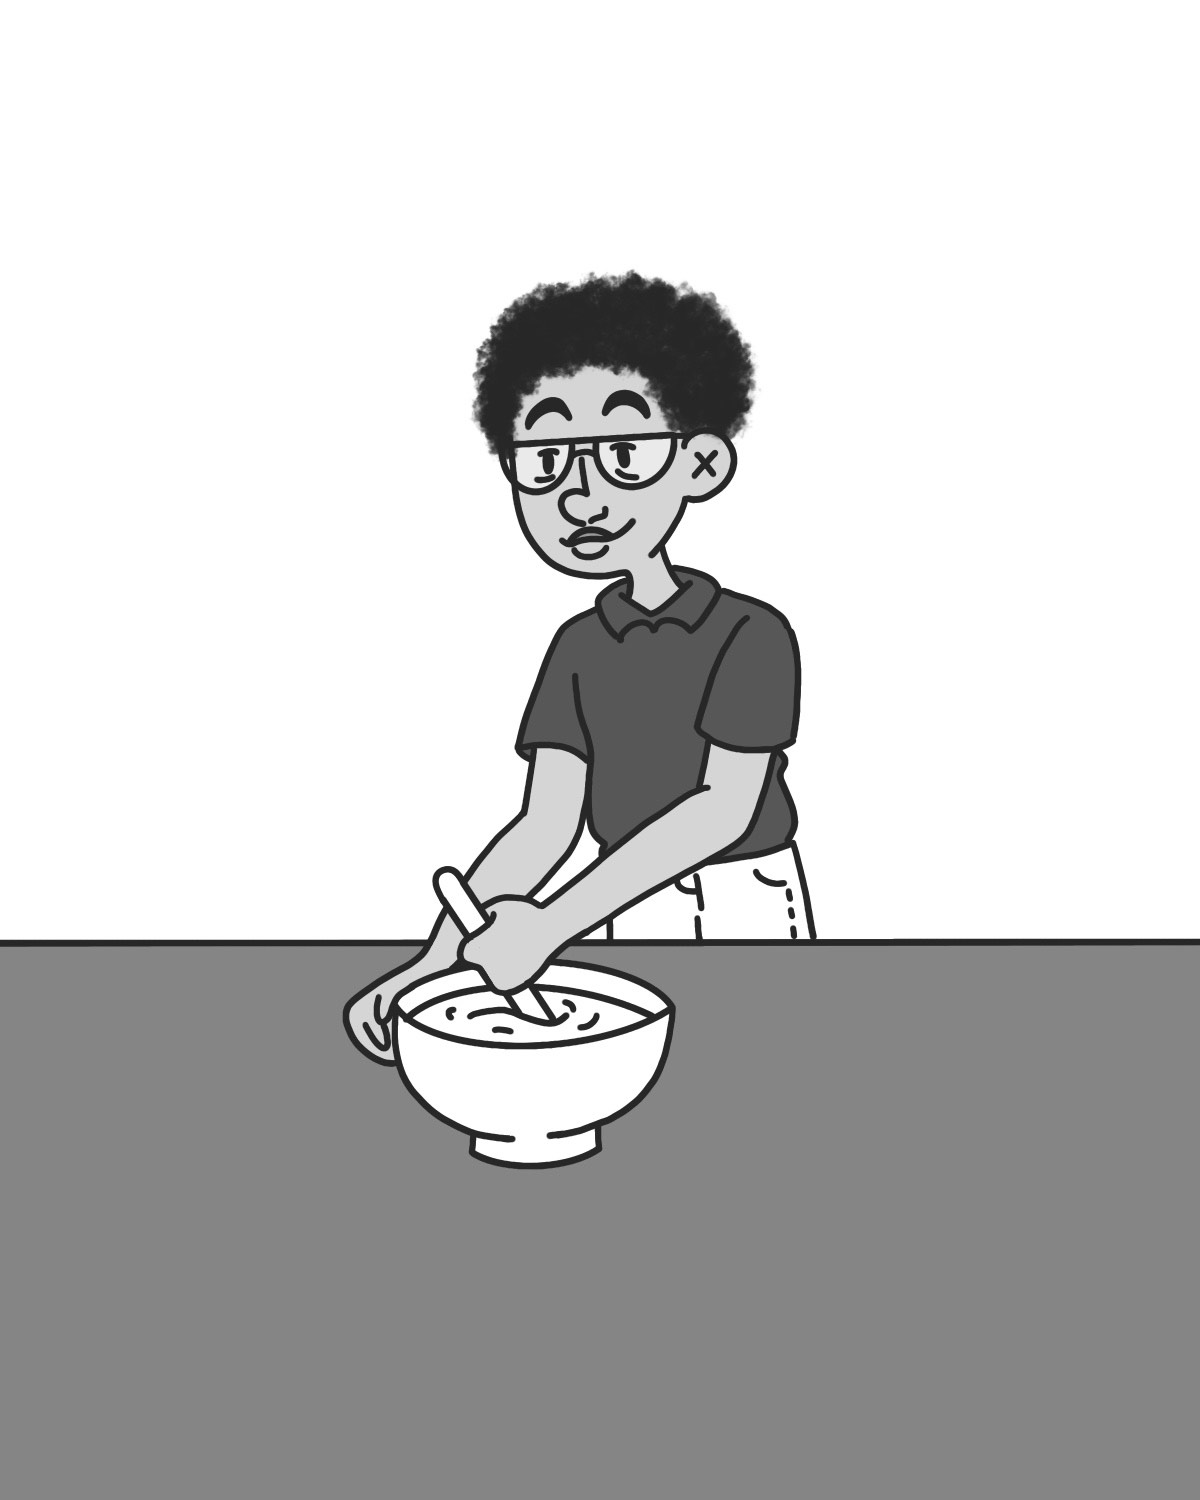 Huxley stirring a bowl